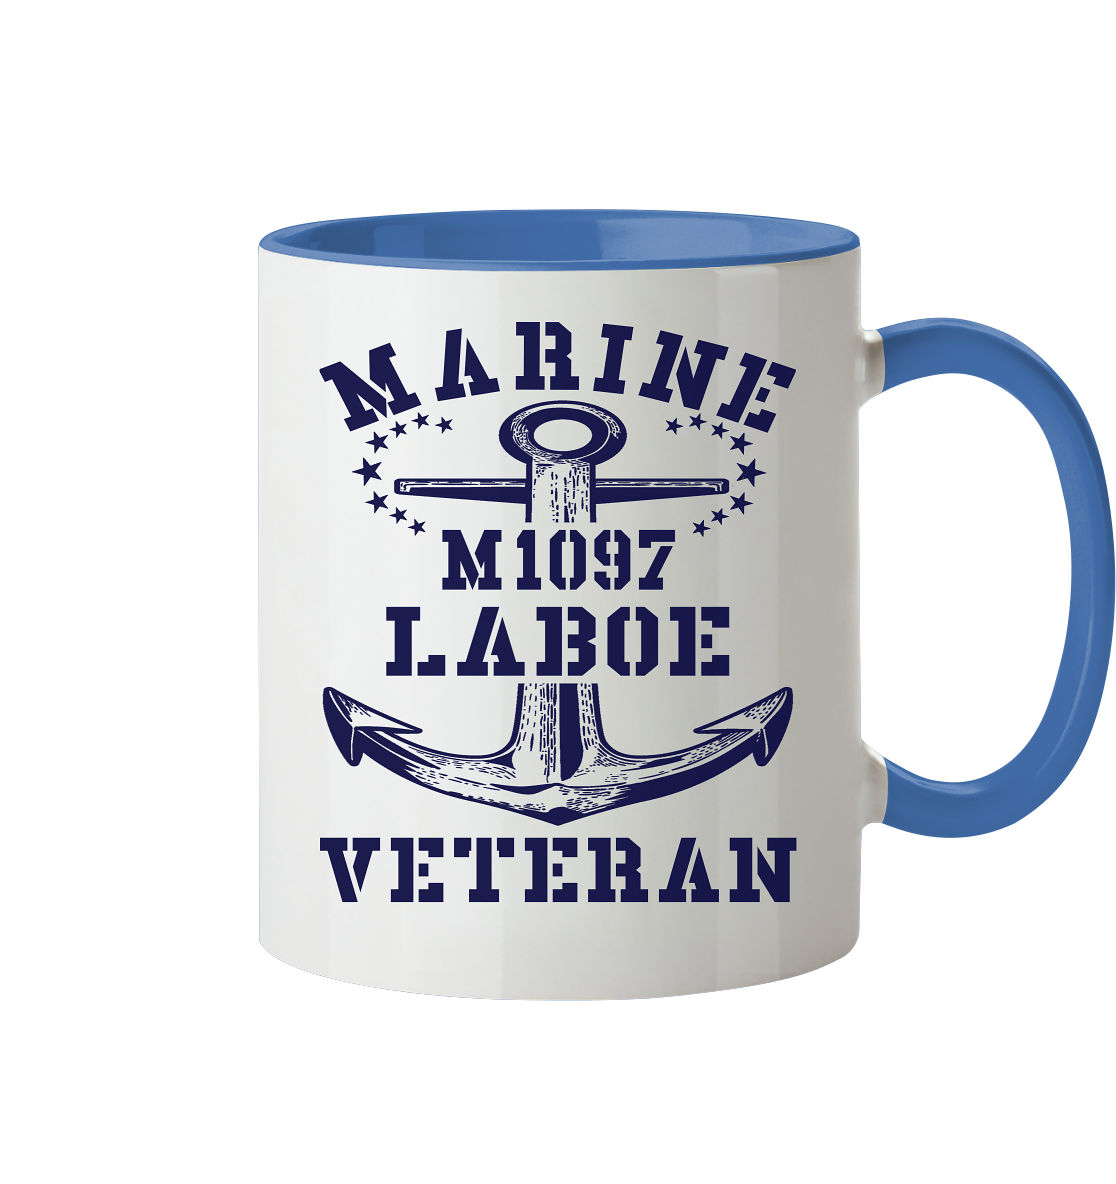 M1097 LABOE Marine Veteran - Tasse zweifarbig